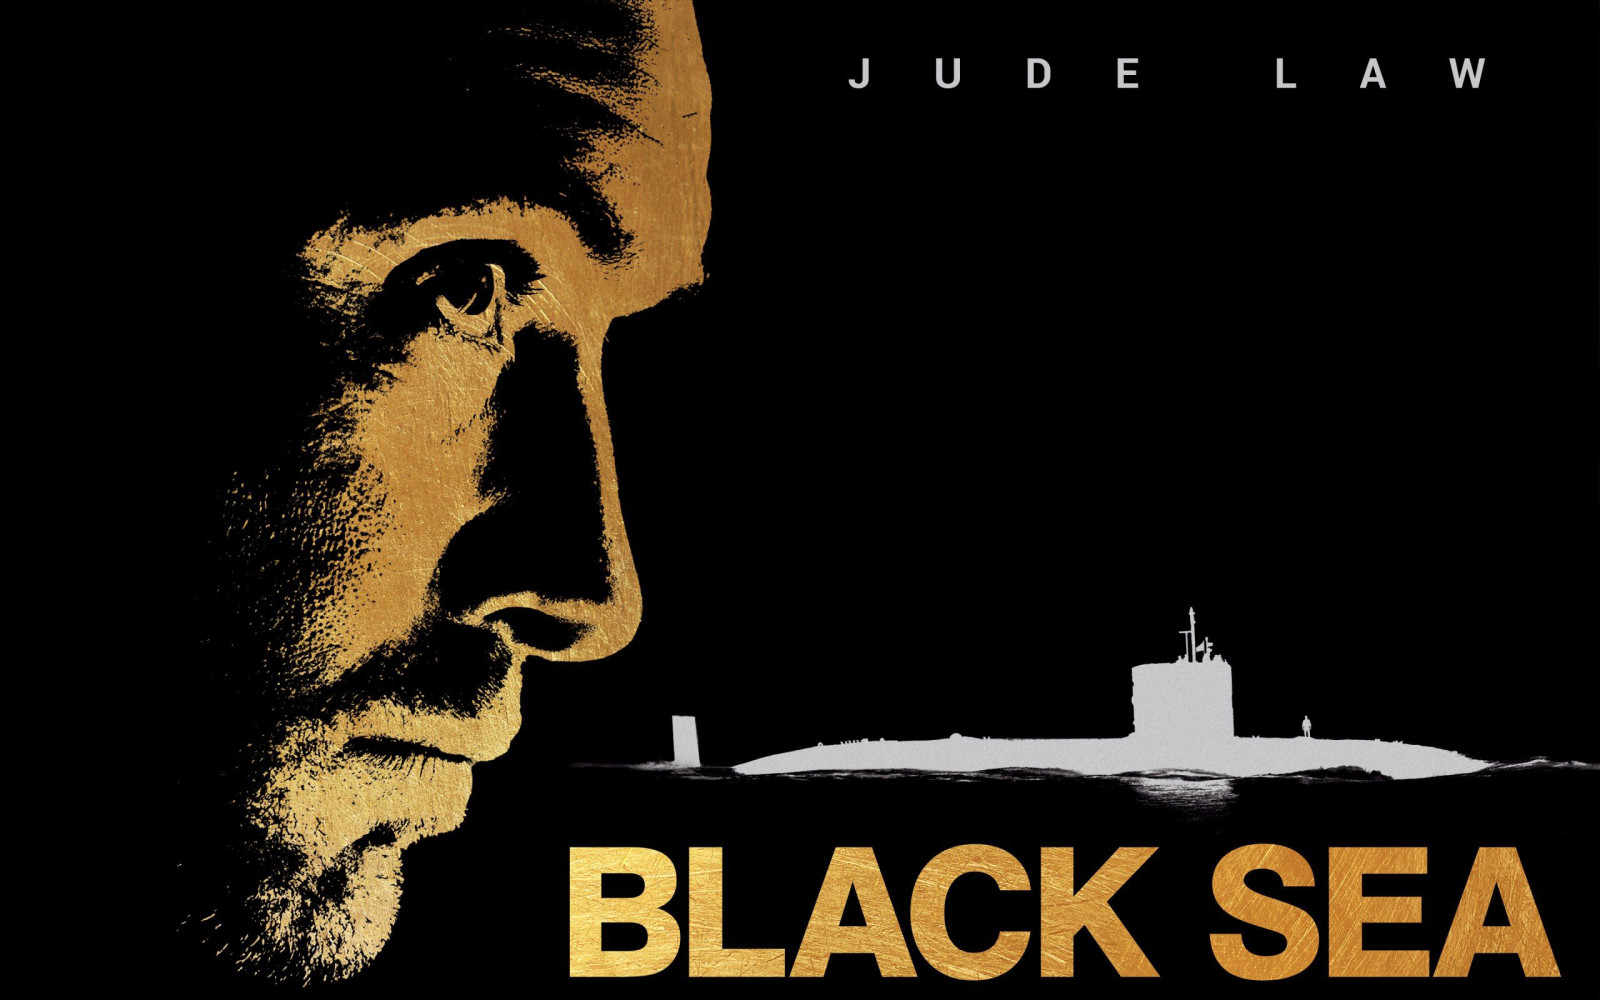 面对, 黑色背景, 轮廓, 潜艇, 海报, 裘德·罗, 黑海